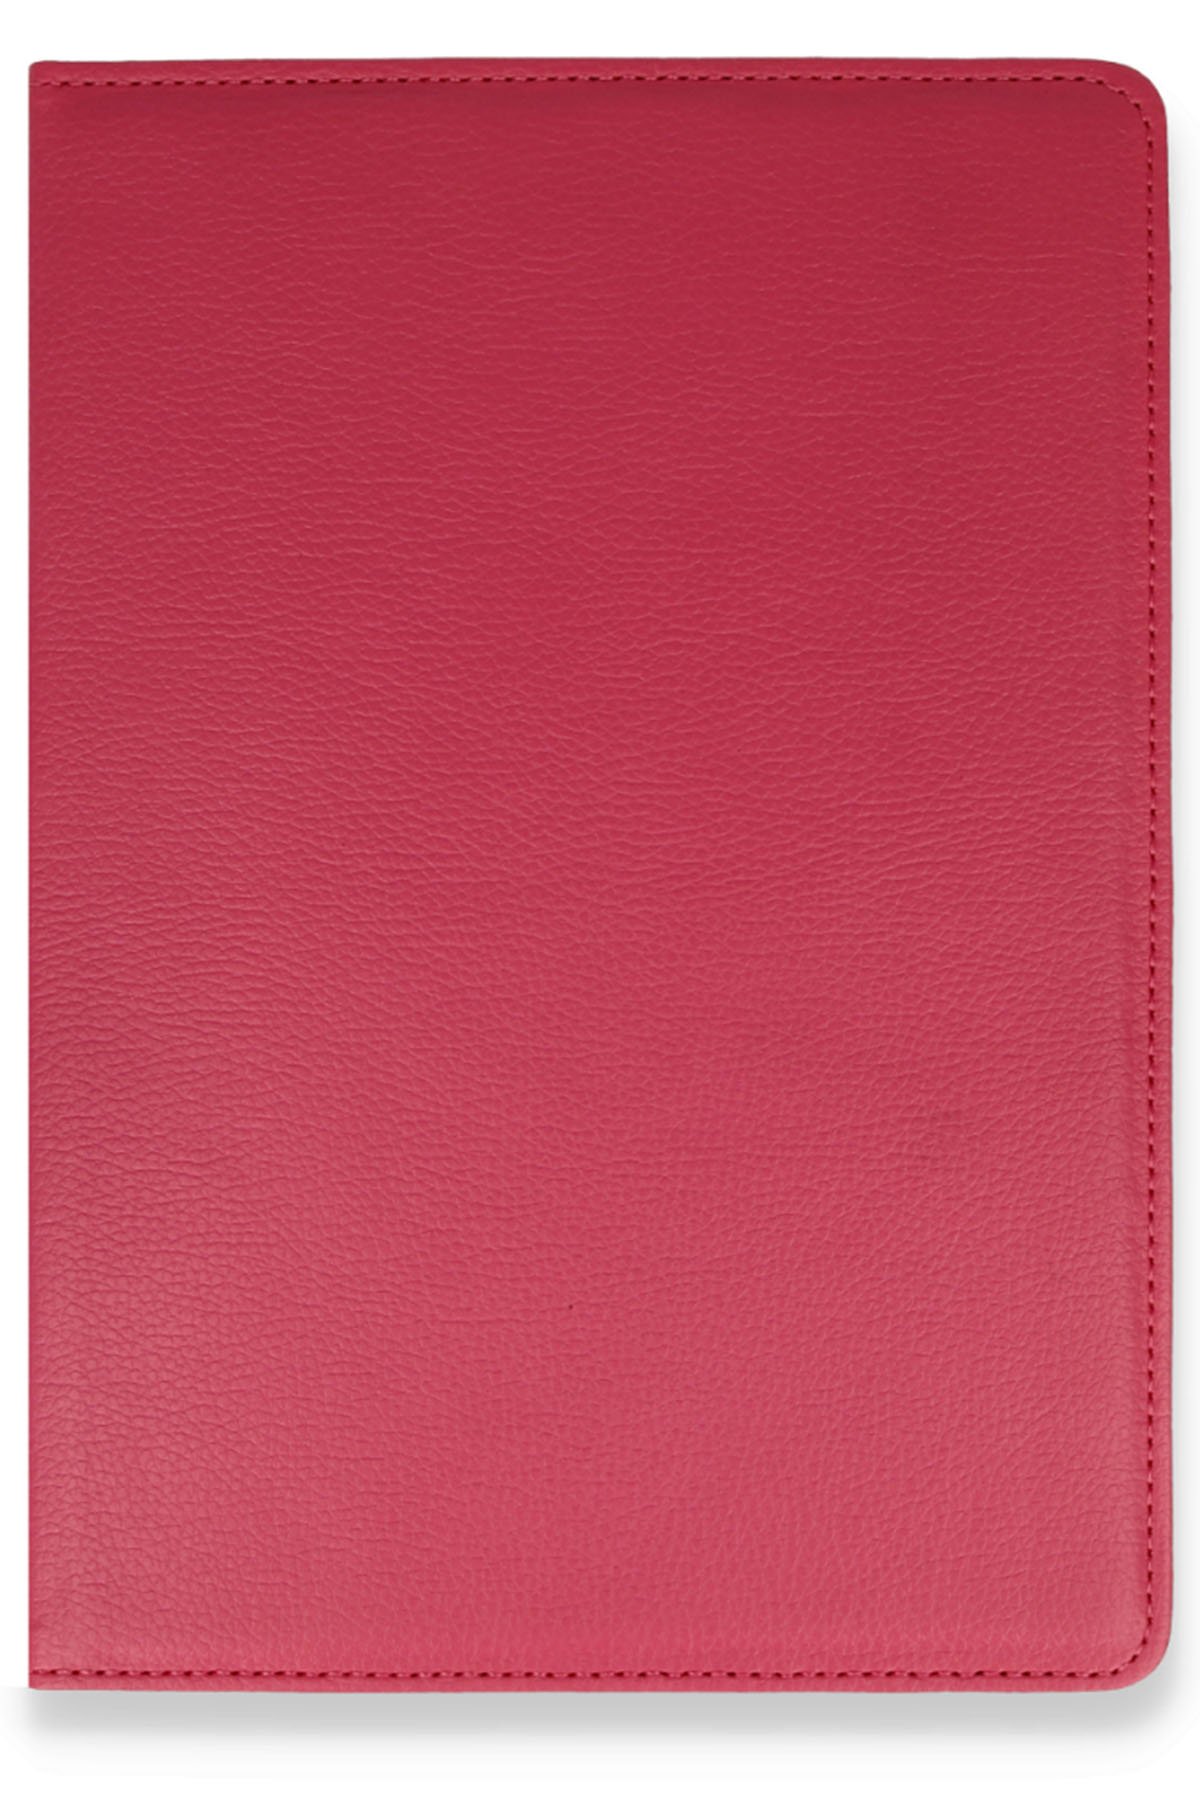 Newface iPad Mini 3 Kılıf 360 Tablet Deri Kılıf - Kırmızı